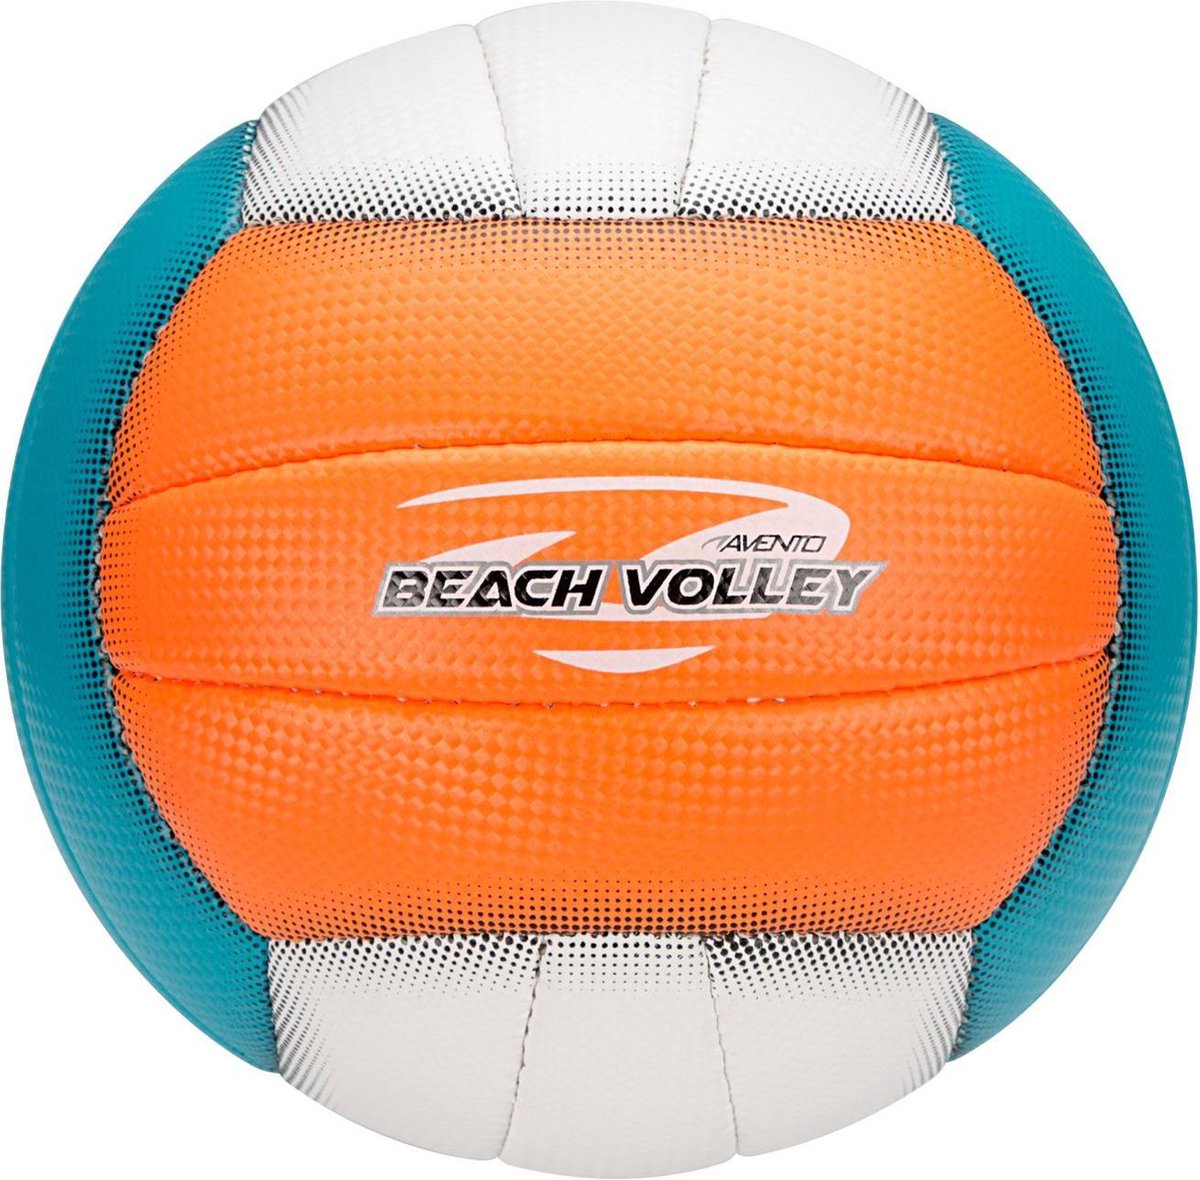 Billede af Avento Beach Volleyball Orange/Blå/Hvid - Beachvolleyball i standard størrelse - HURTIG LEVERING